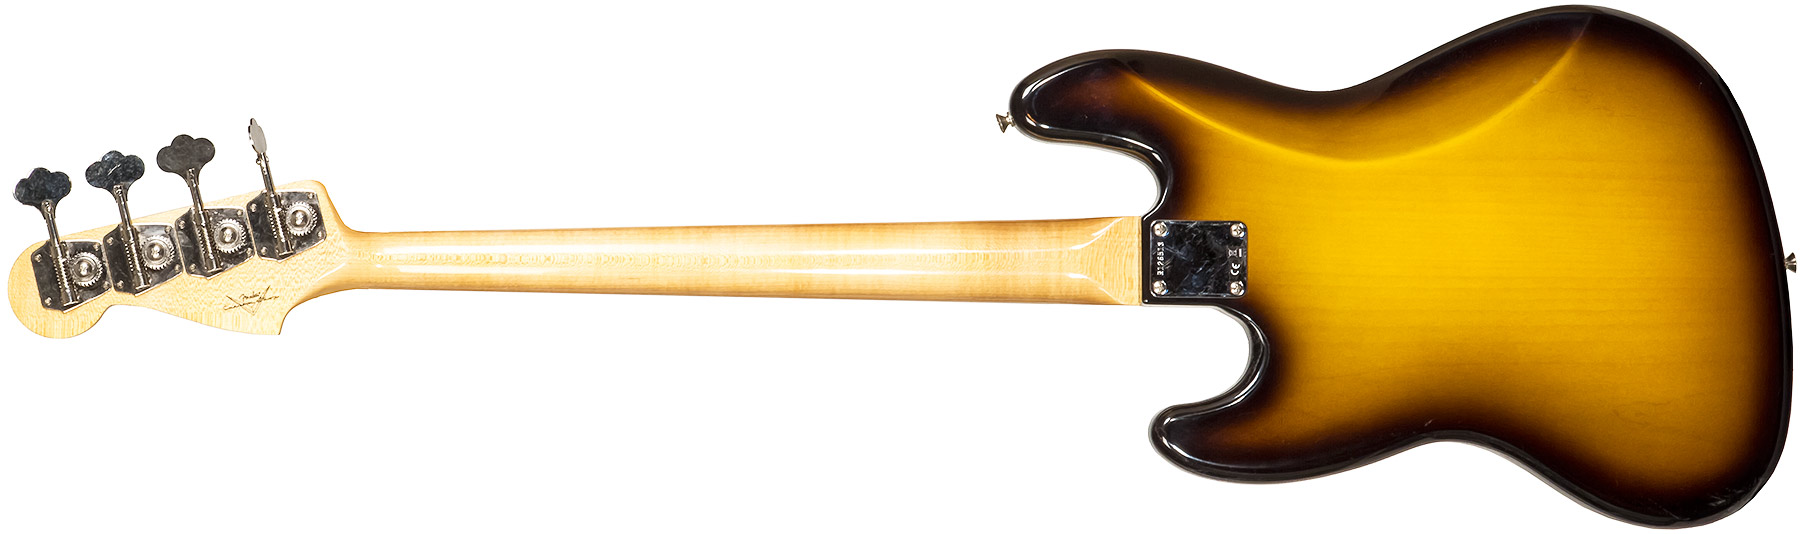 Fender Custom Shop Jazz Bass 1964 Rw #r126513 - Closet Classic 2-color Sunburst - Basse Électrique Solid Body - Variation 1